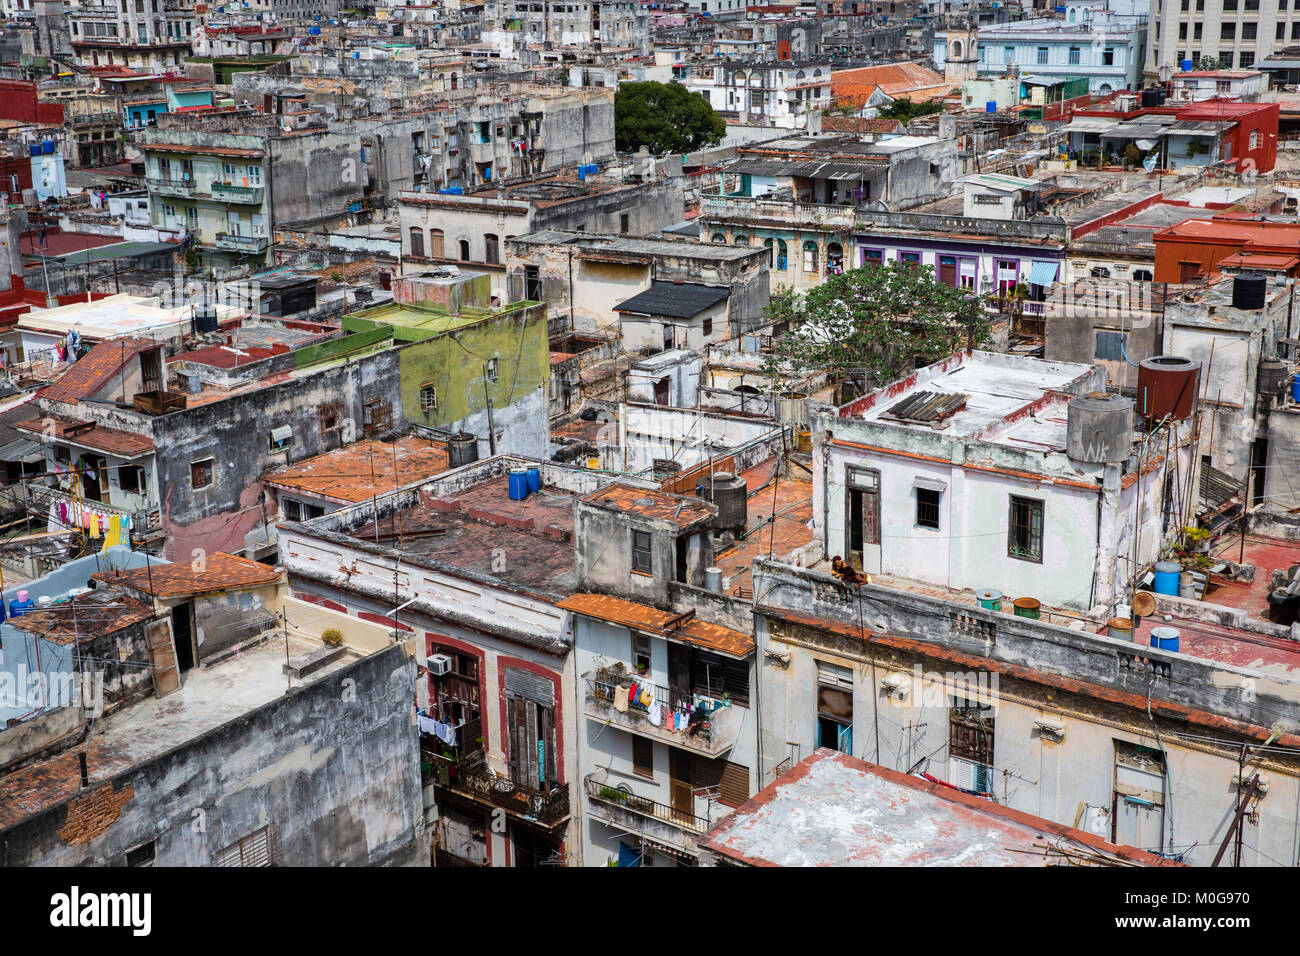 Dachterrasse mit Blick auf die Altstadt von Havanna, Kuba Stockfoto